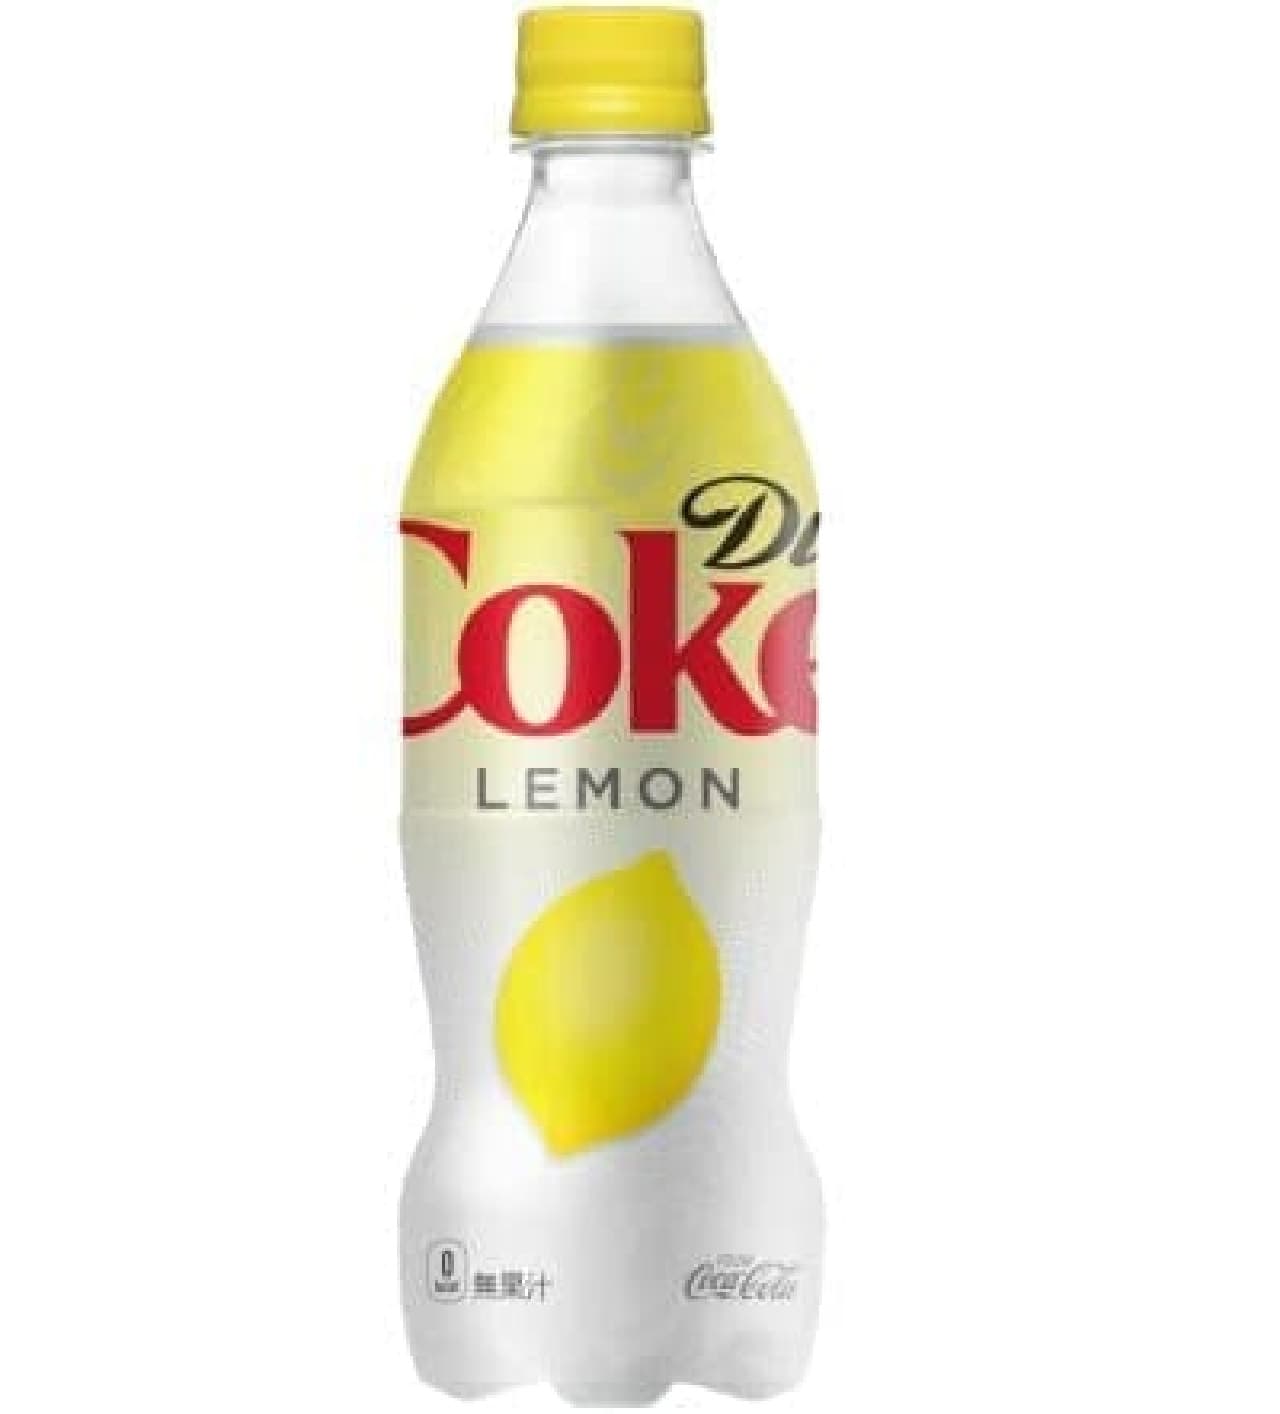 Diet coke lemon